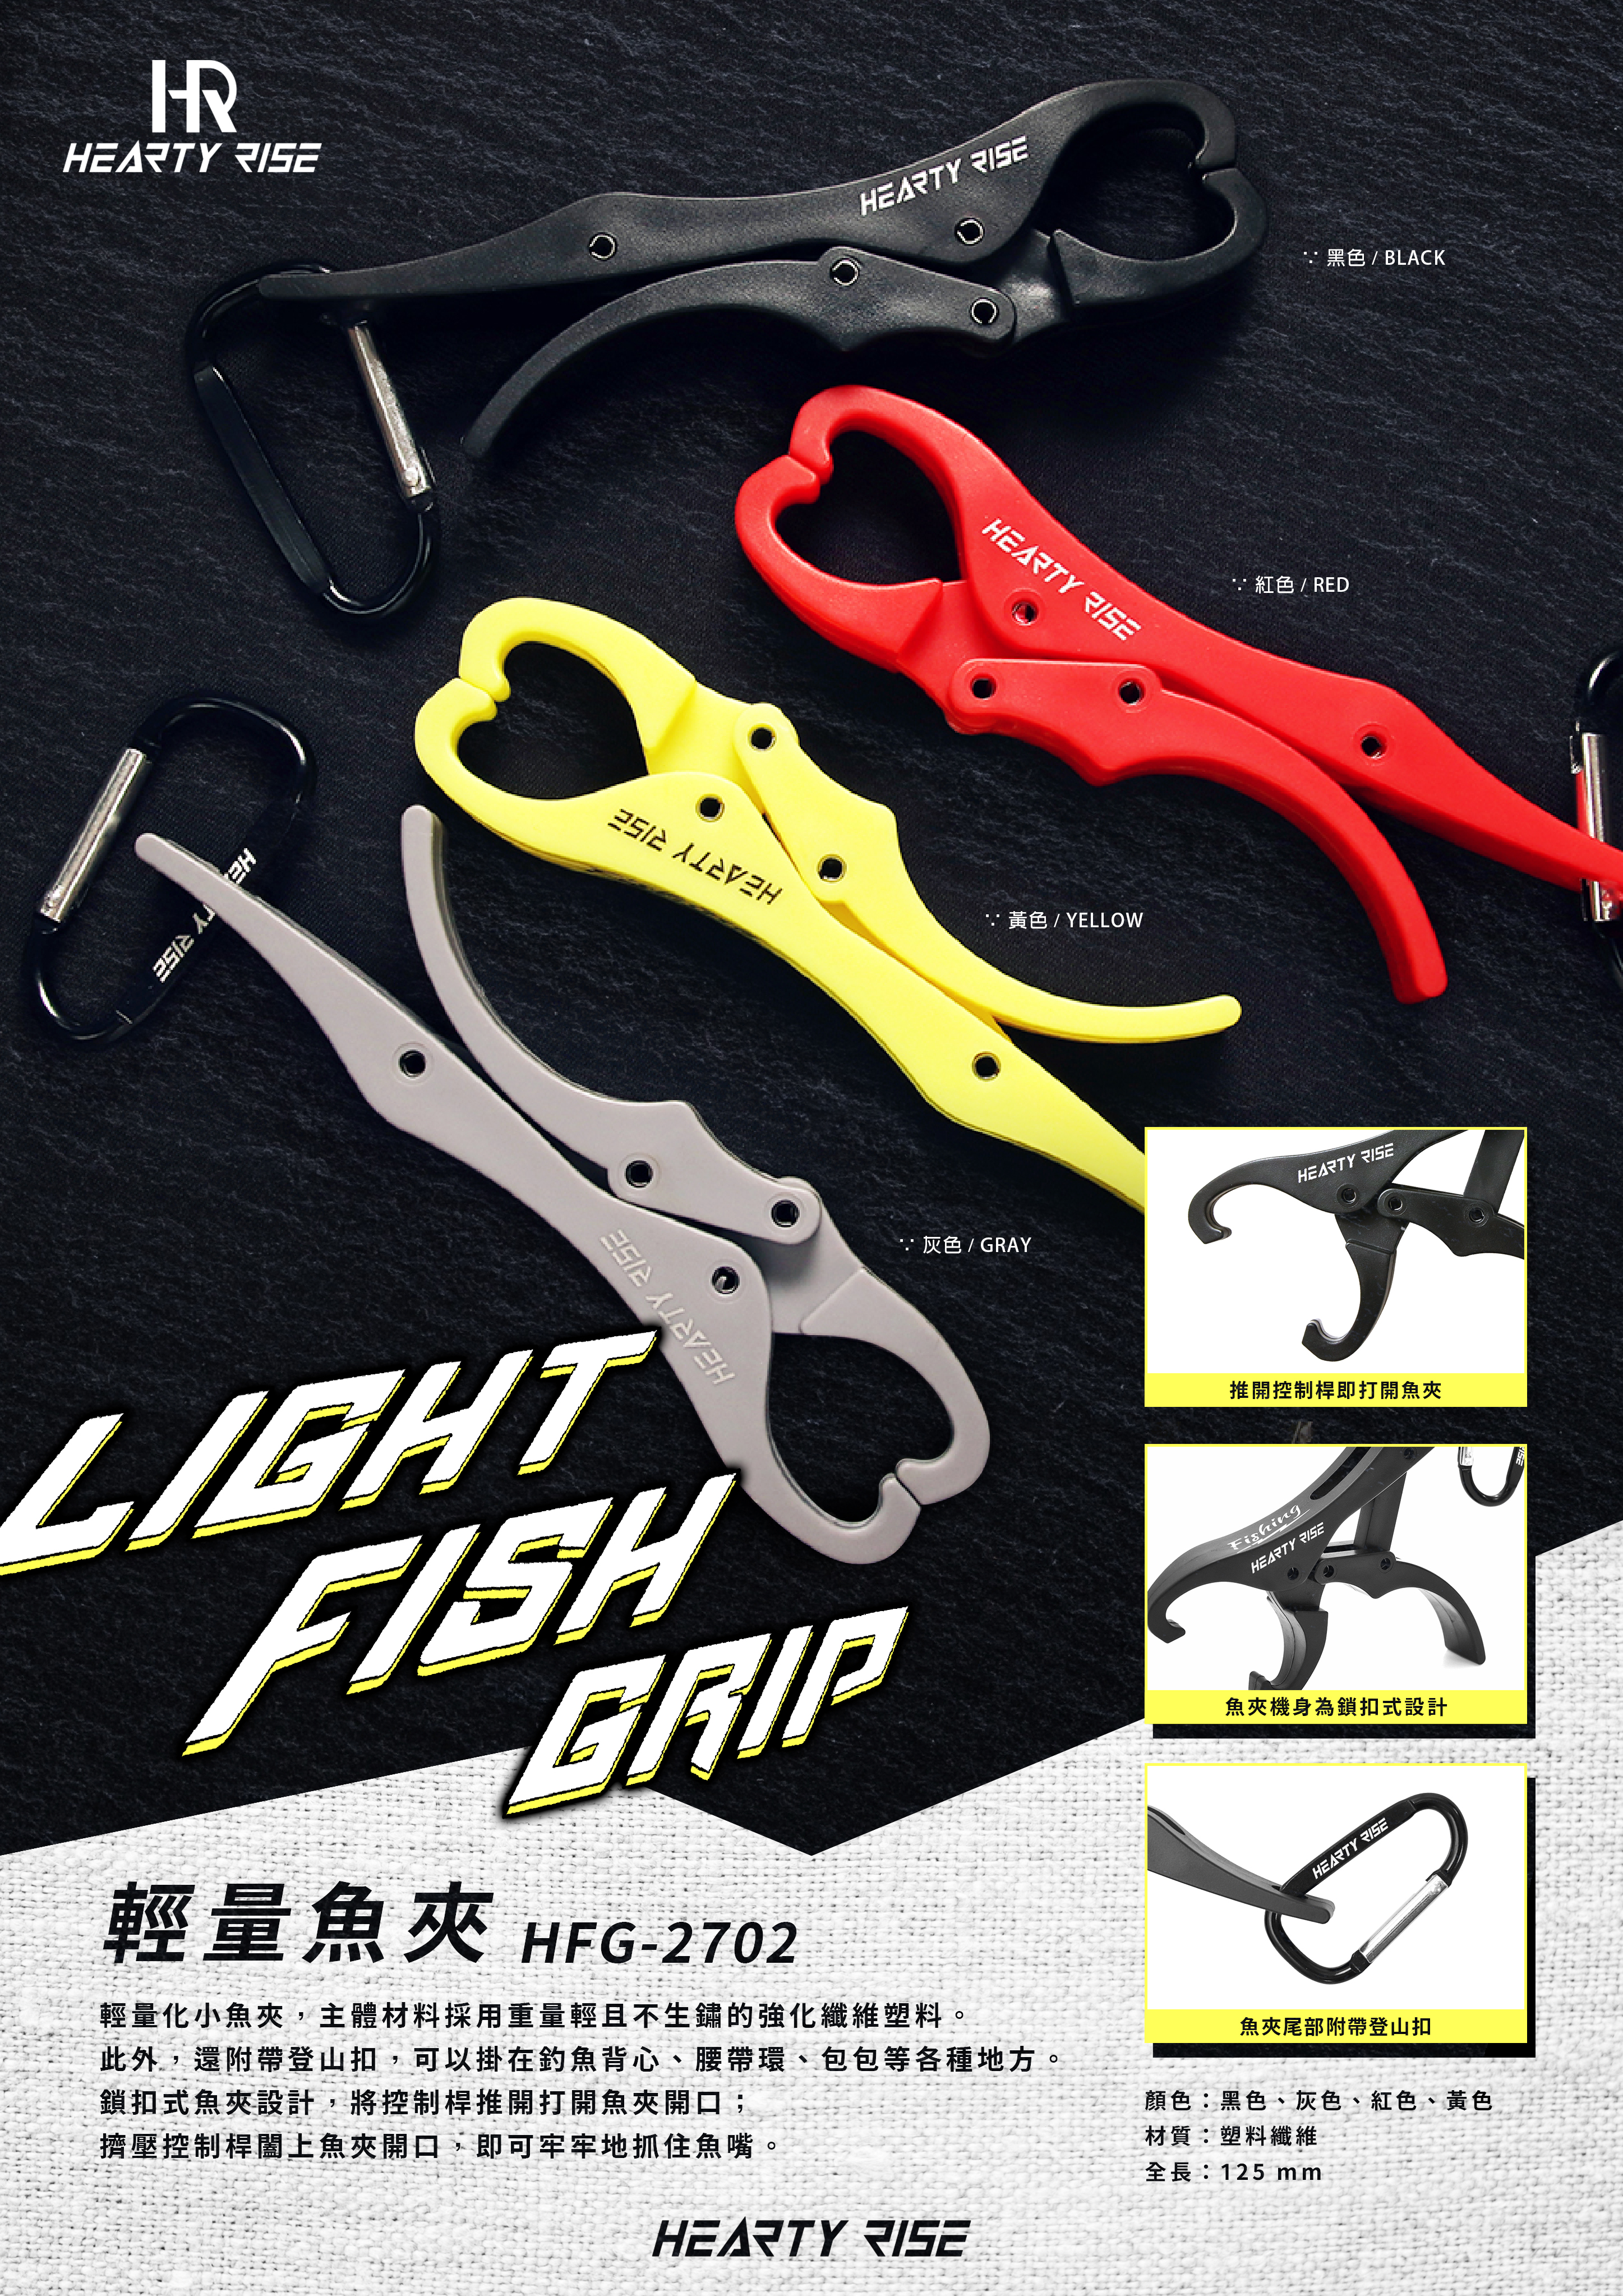 HR LIGHT FISH GRIP 輕量魚夾 HFG-2702 A4-2